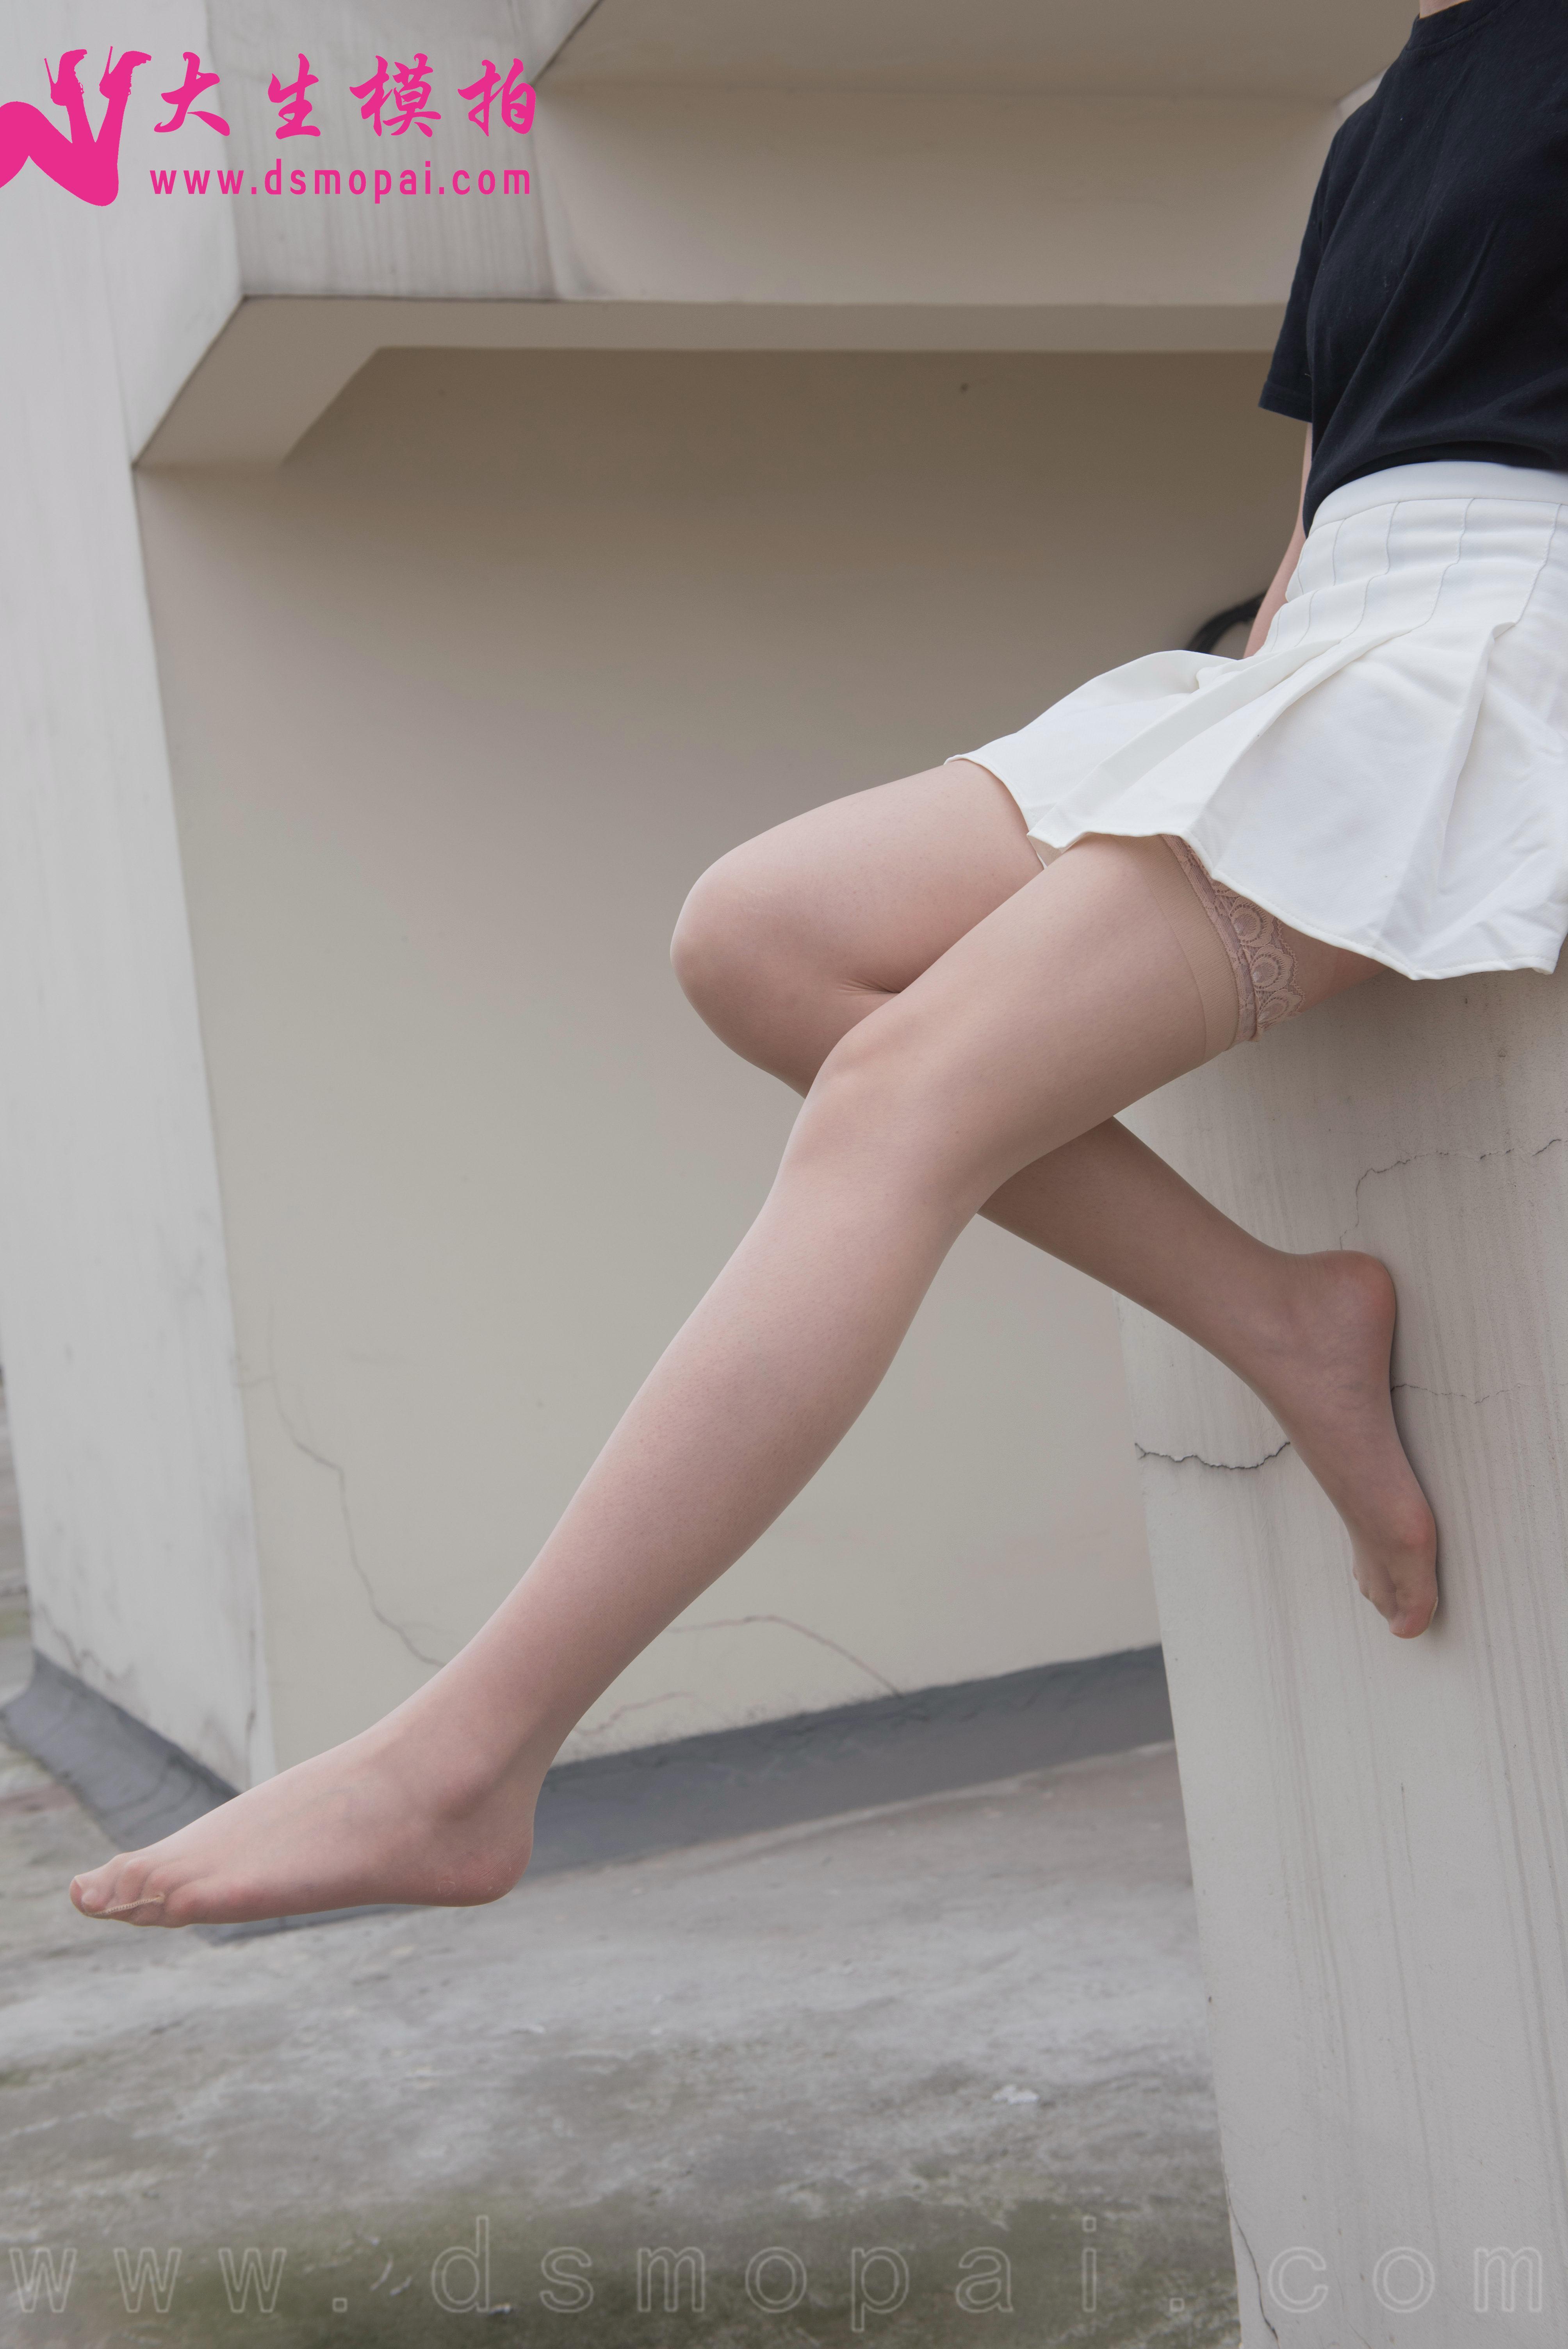 [大生模拍]一元区 天台长筒袜 白色短裙加肉丝美腿私房写真,DSC_0012